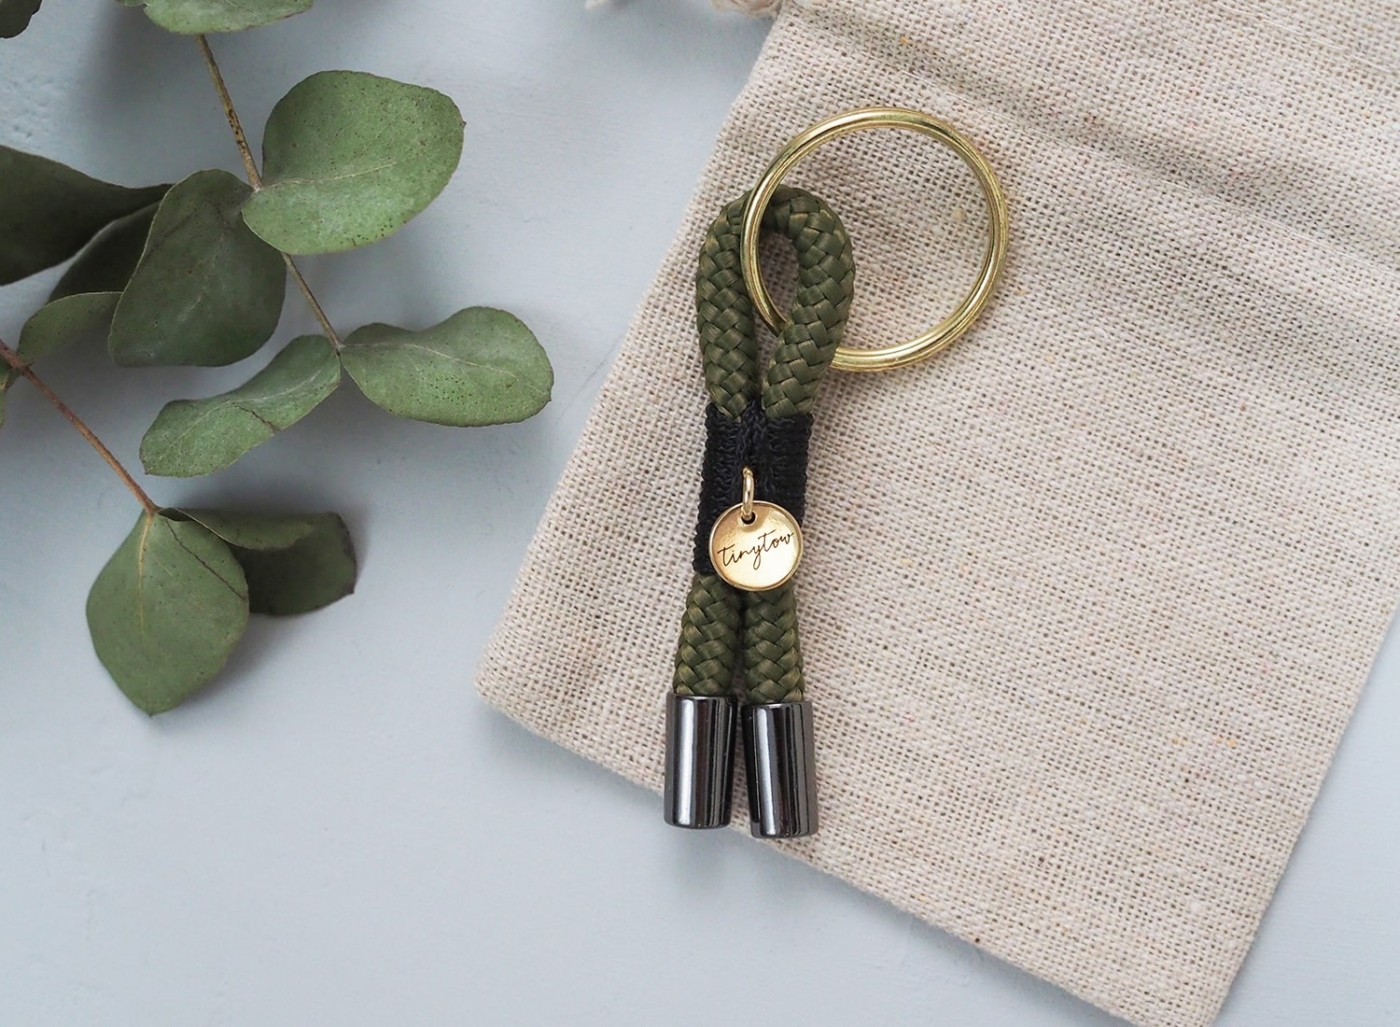 Schlüsselanhänger aus Tau in olivgrün und schwarz mit goldenen Details und beigem Baumwollsäckchen.